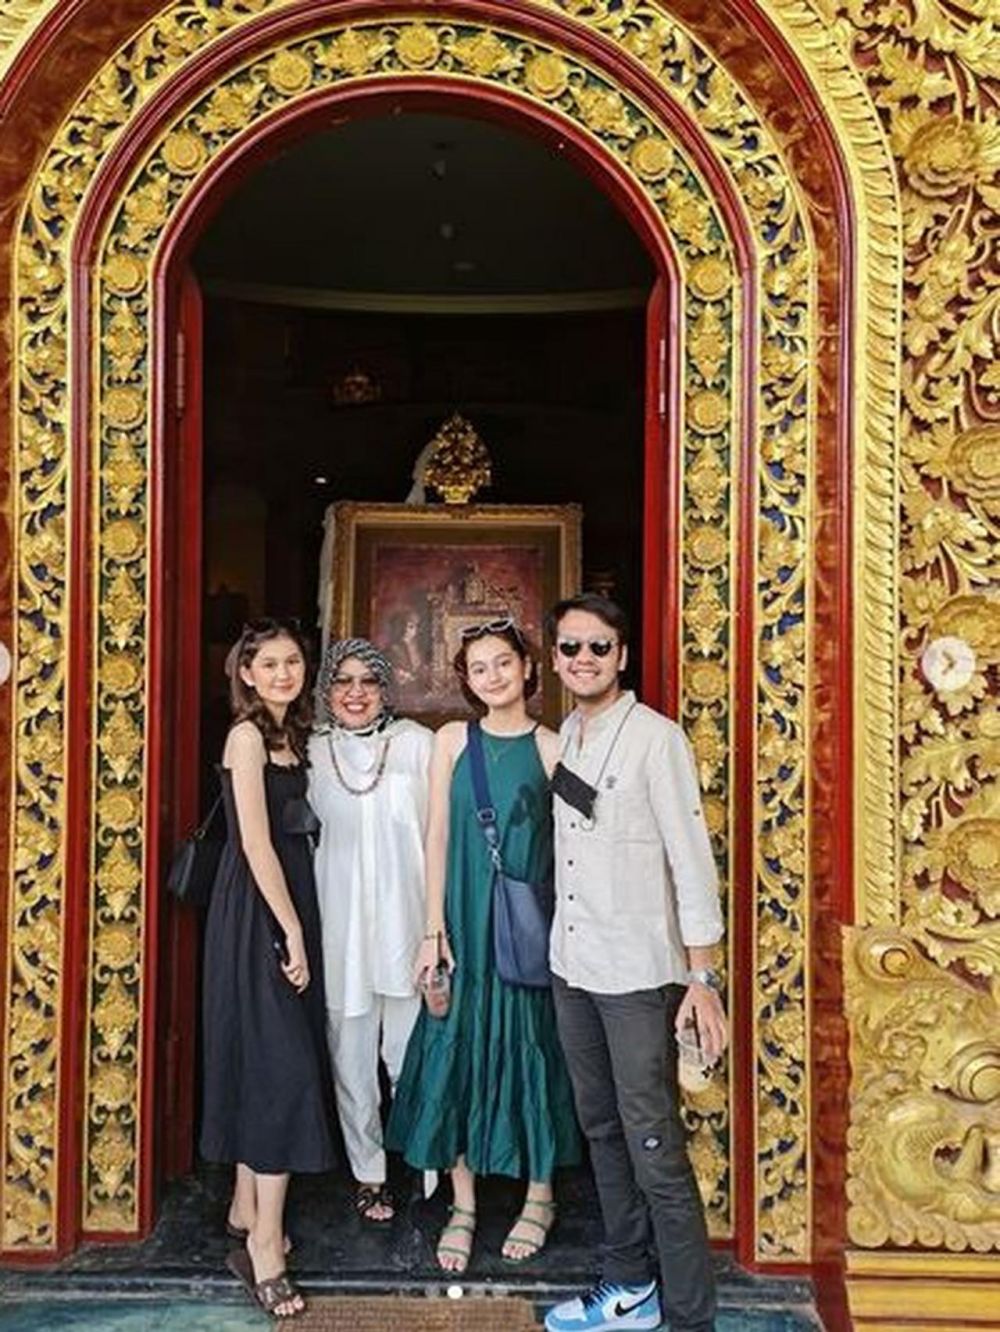 Libur syuting, ini 5 momen Zoe Abbas liburan ke Bali bareng keluarga